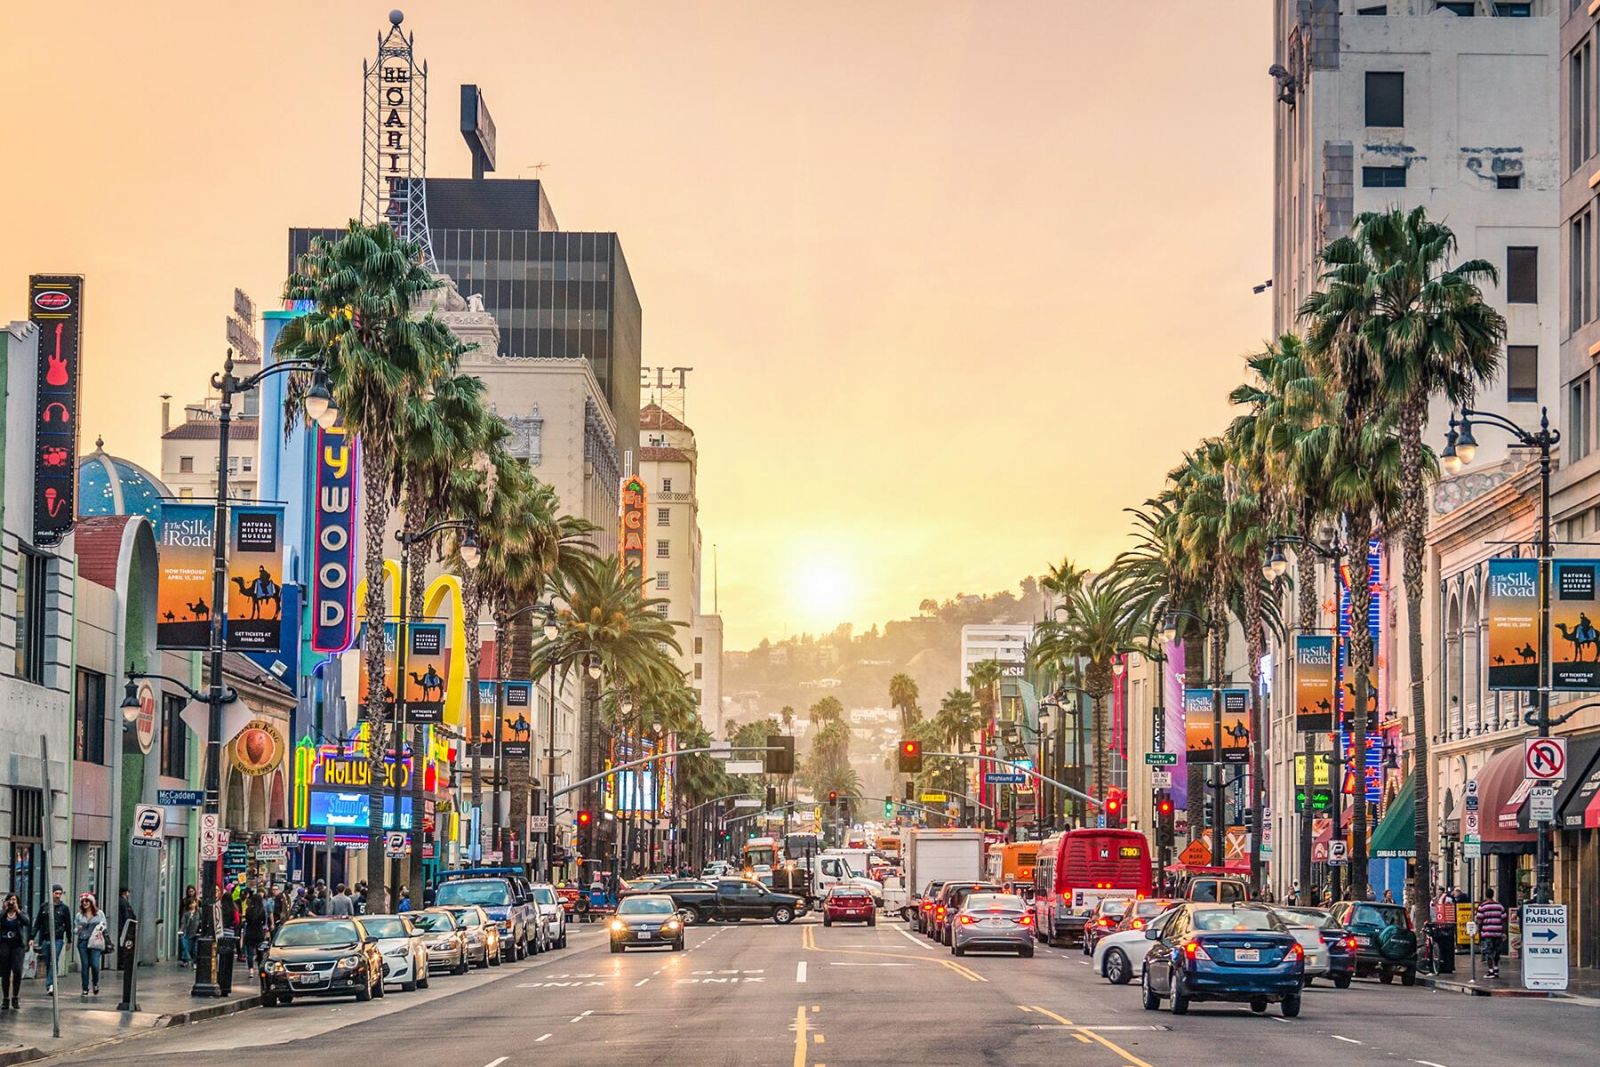 Los Angeles - Thành phố nổi tiếng nhờ phát hành bộ phim La La Land